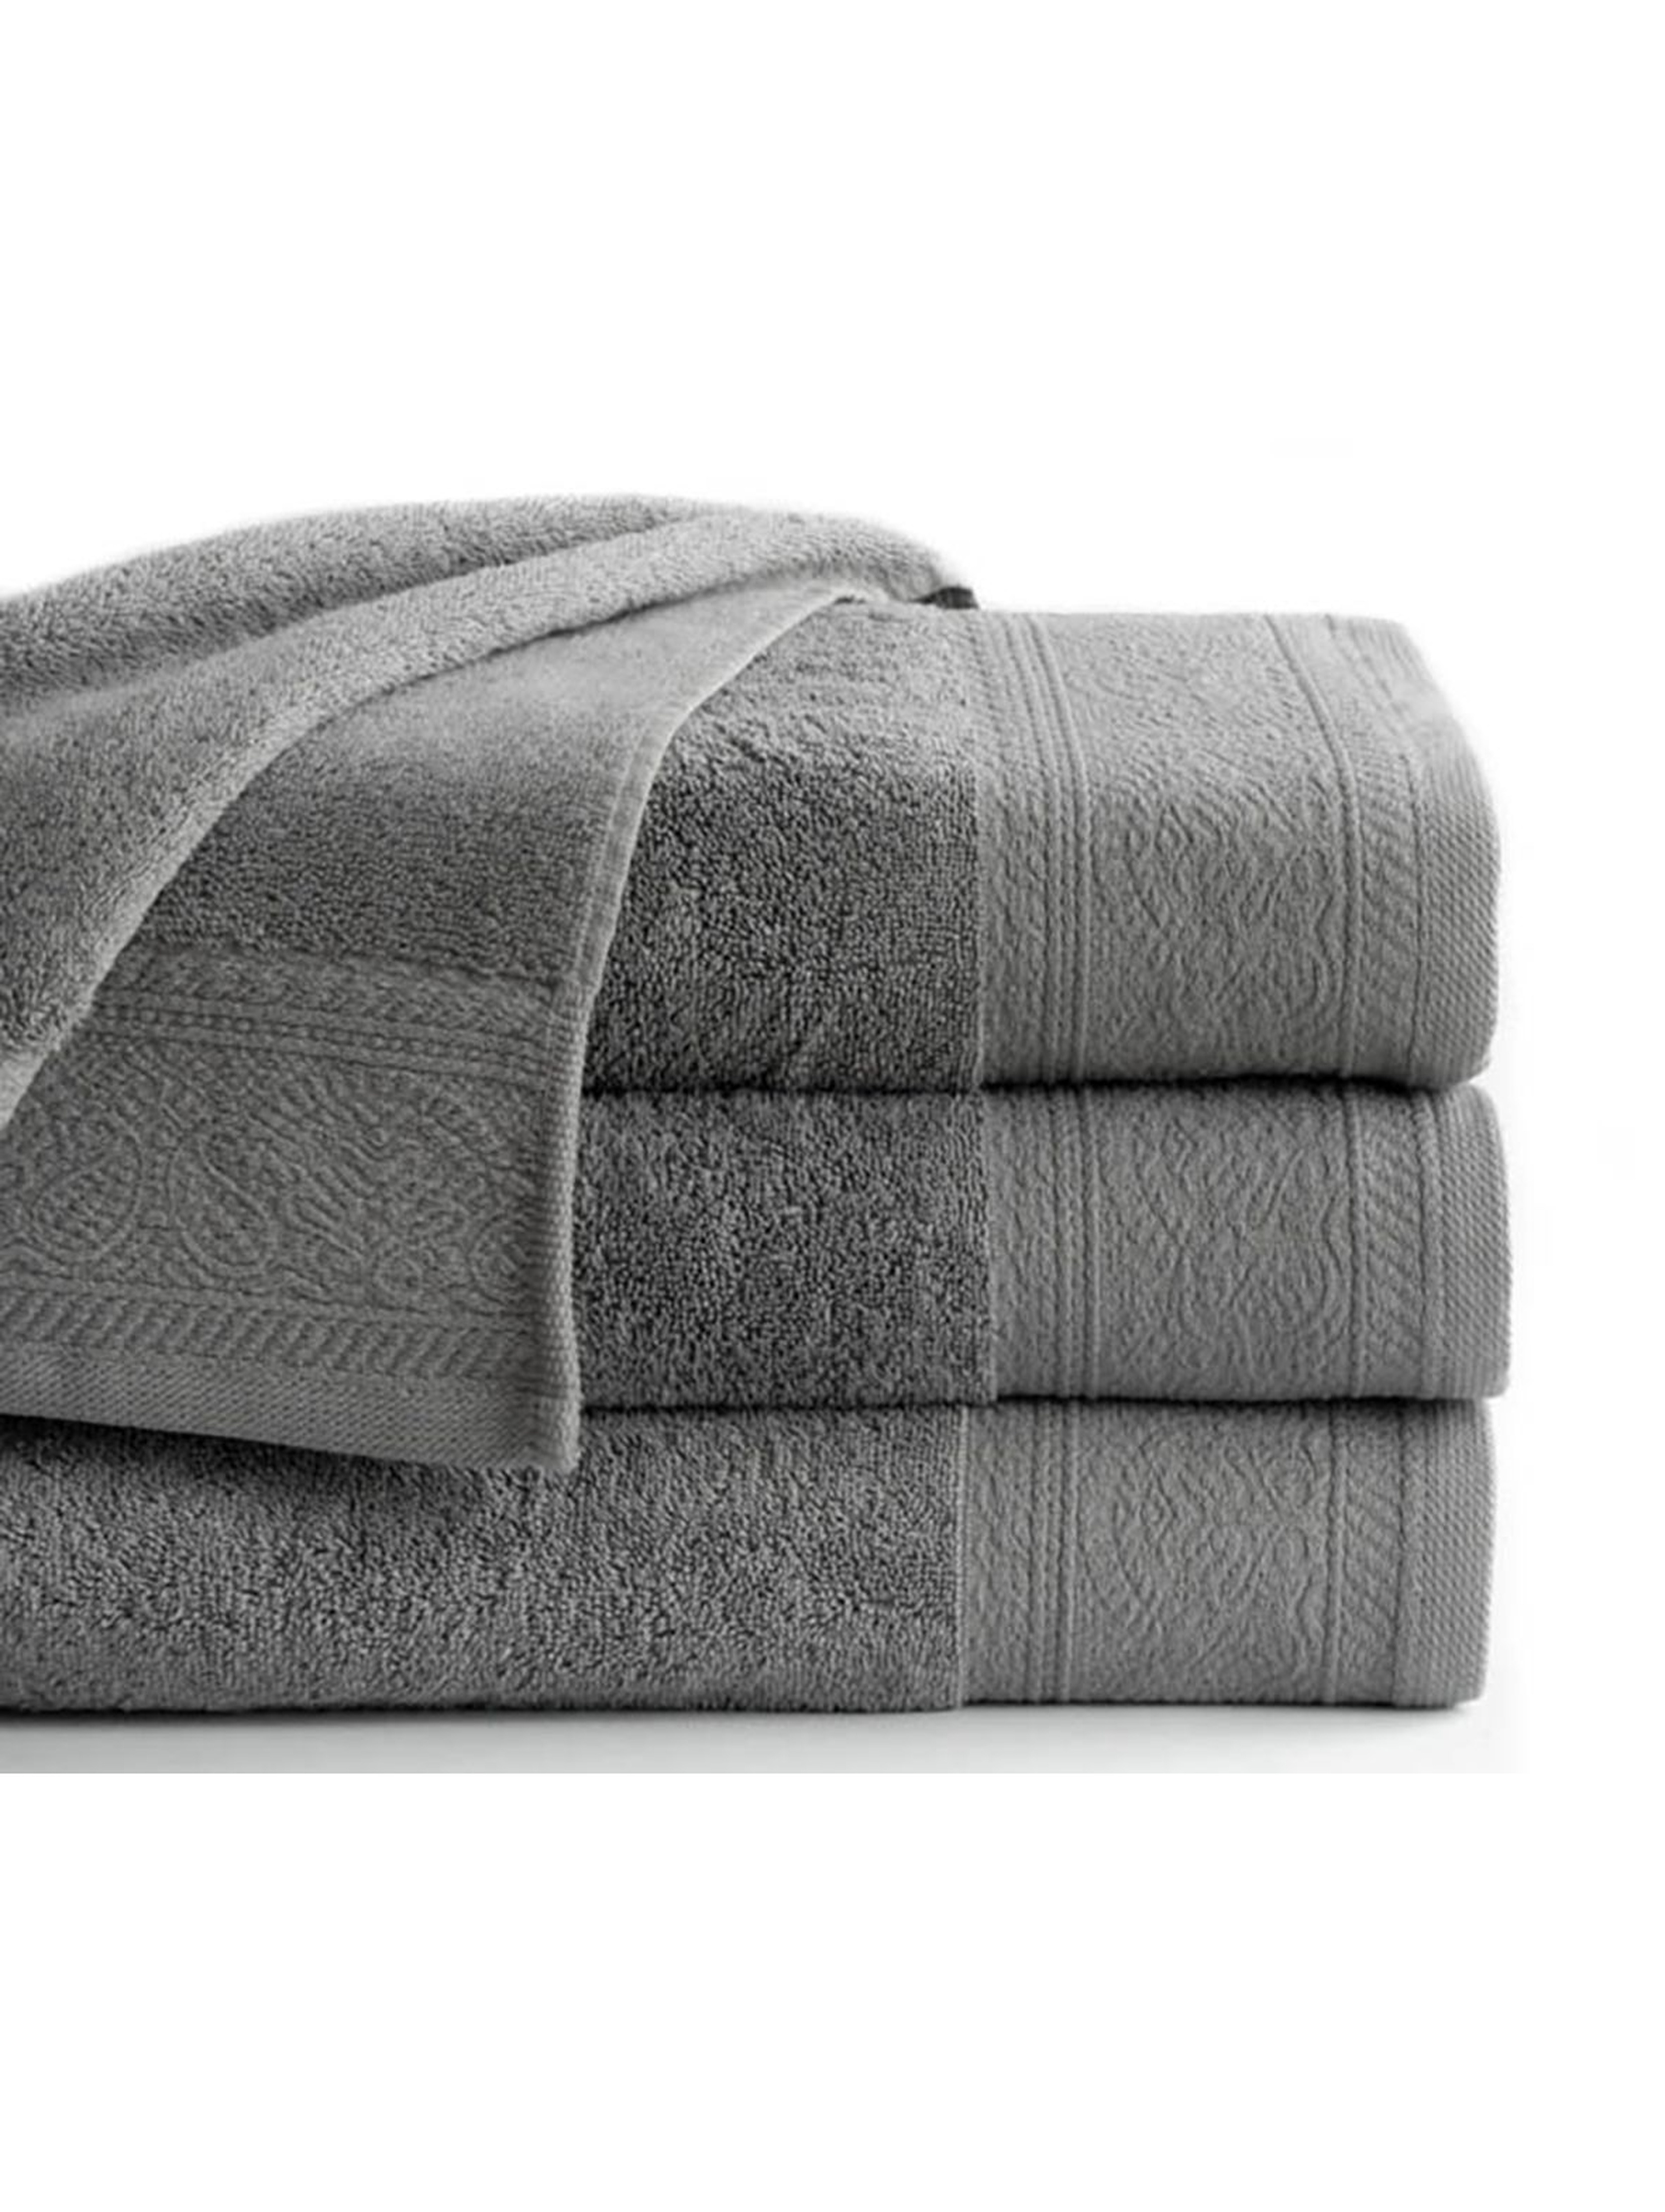 Bawełniany ręcznik MASSIMO 50x90cm - szary